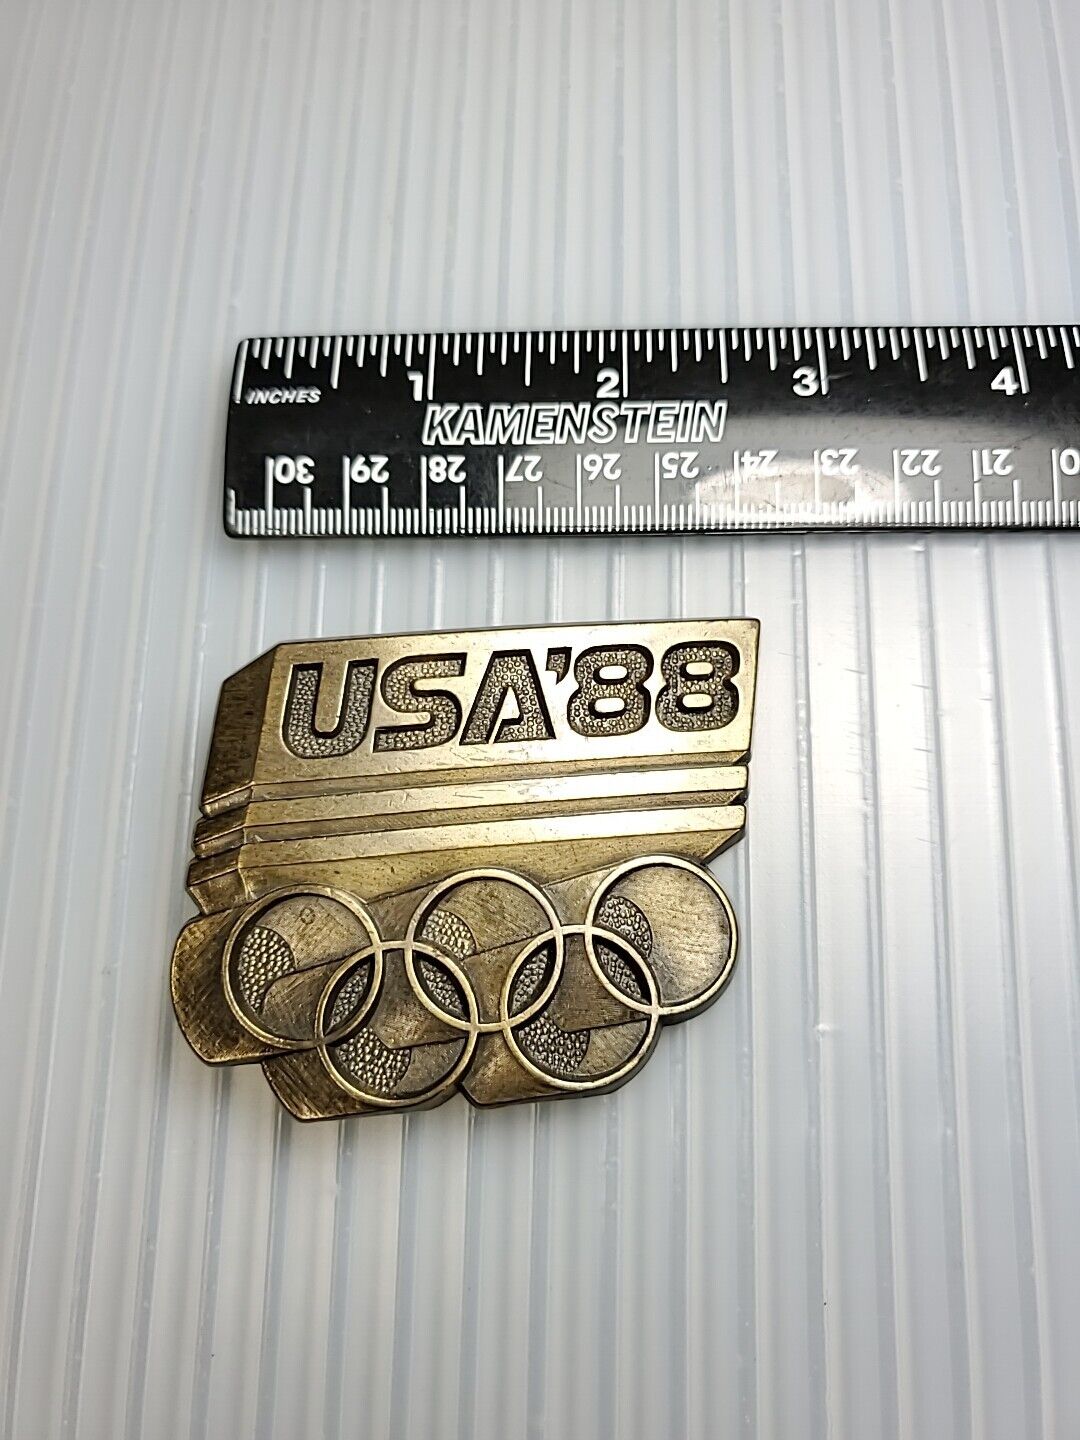 1988 Vintage USA '88 Olympics Belt Buckle - image 3